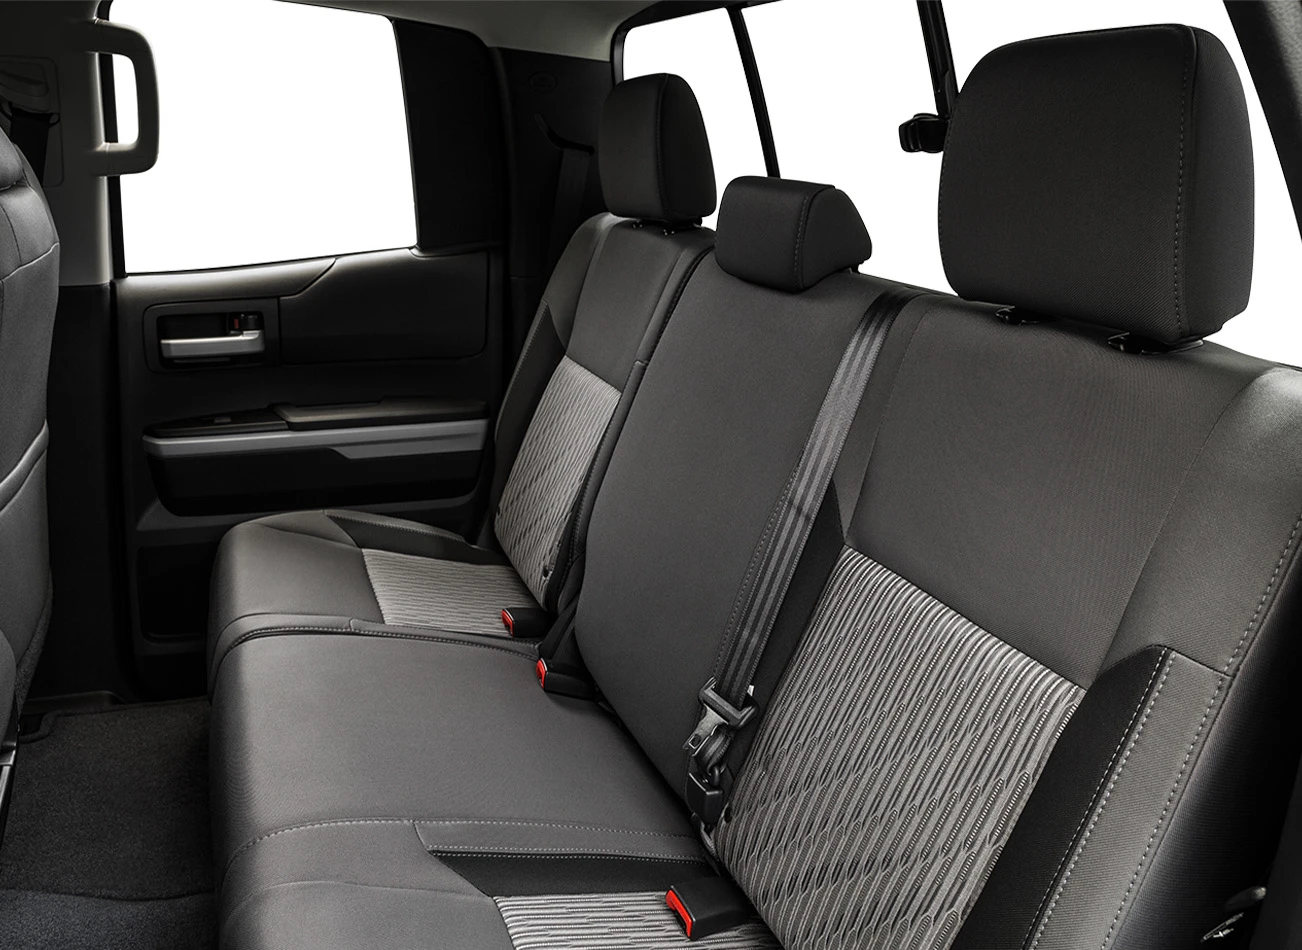 2015 Toyota Tundra: Back seats | CarMax